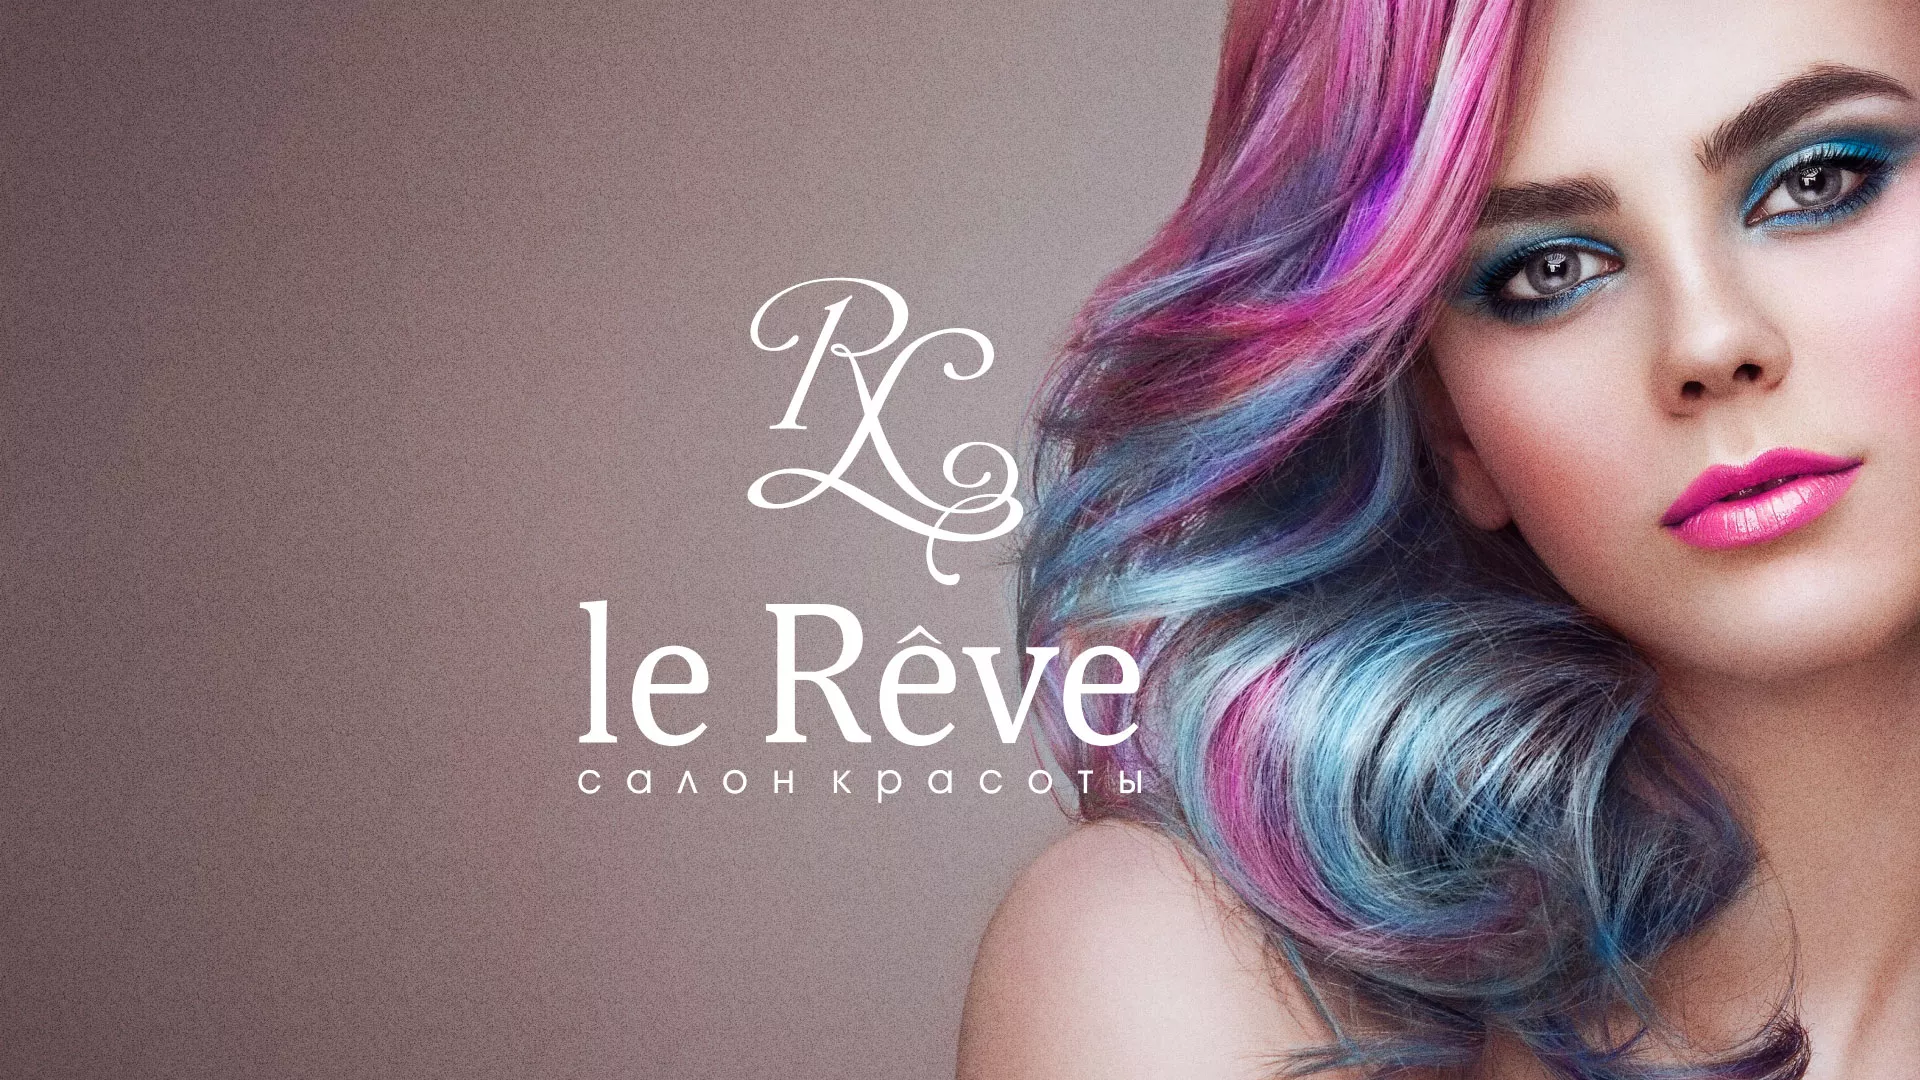 Создание сайта для салона красоты «Le Reve» в Мариинском Посаде